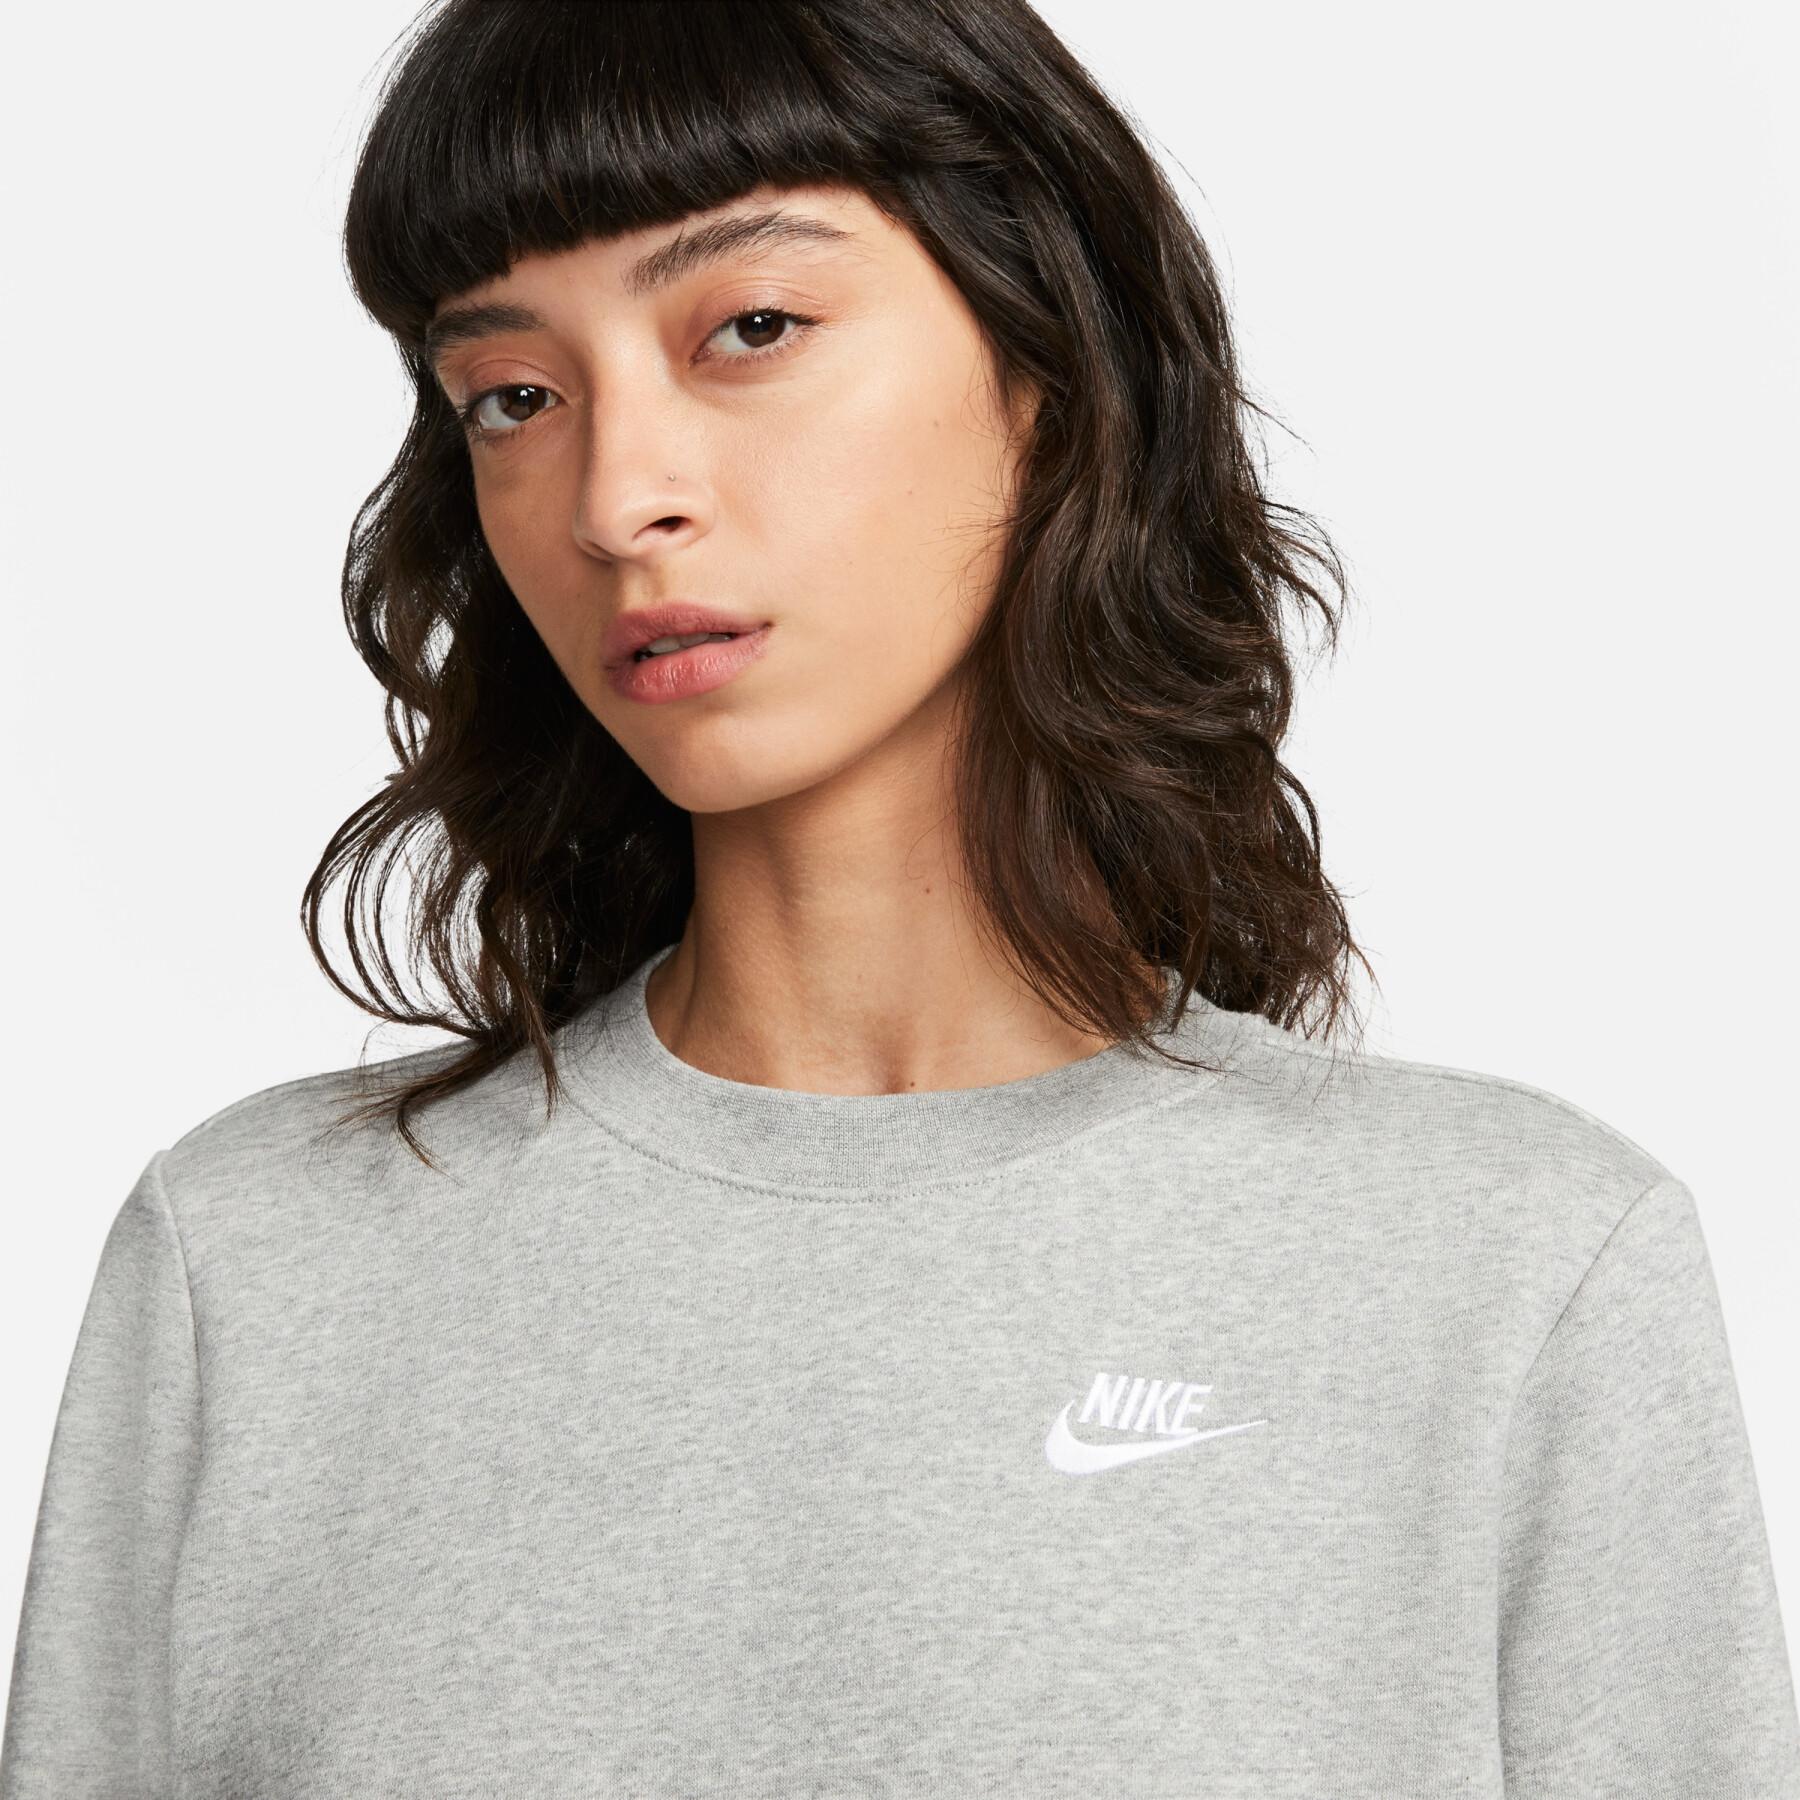 Sweatshirt col rond femme Nike Sportswear Club